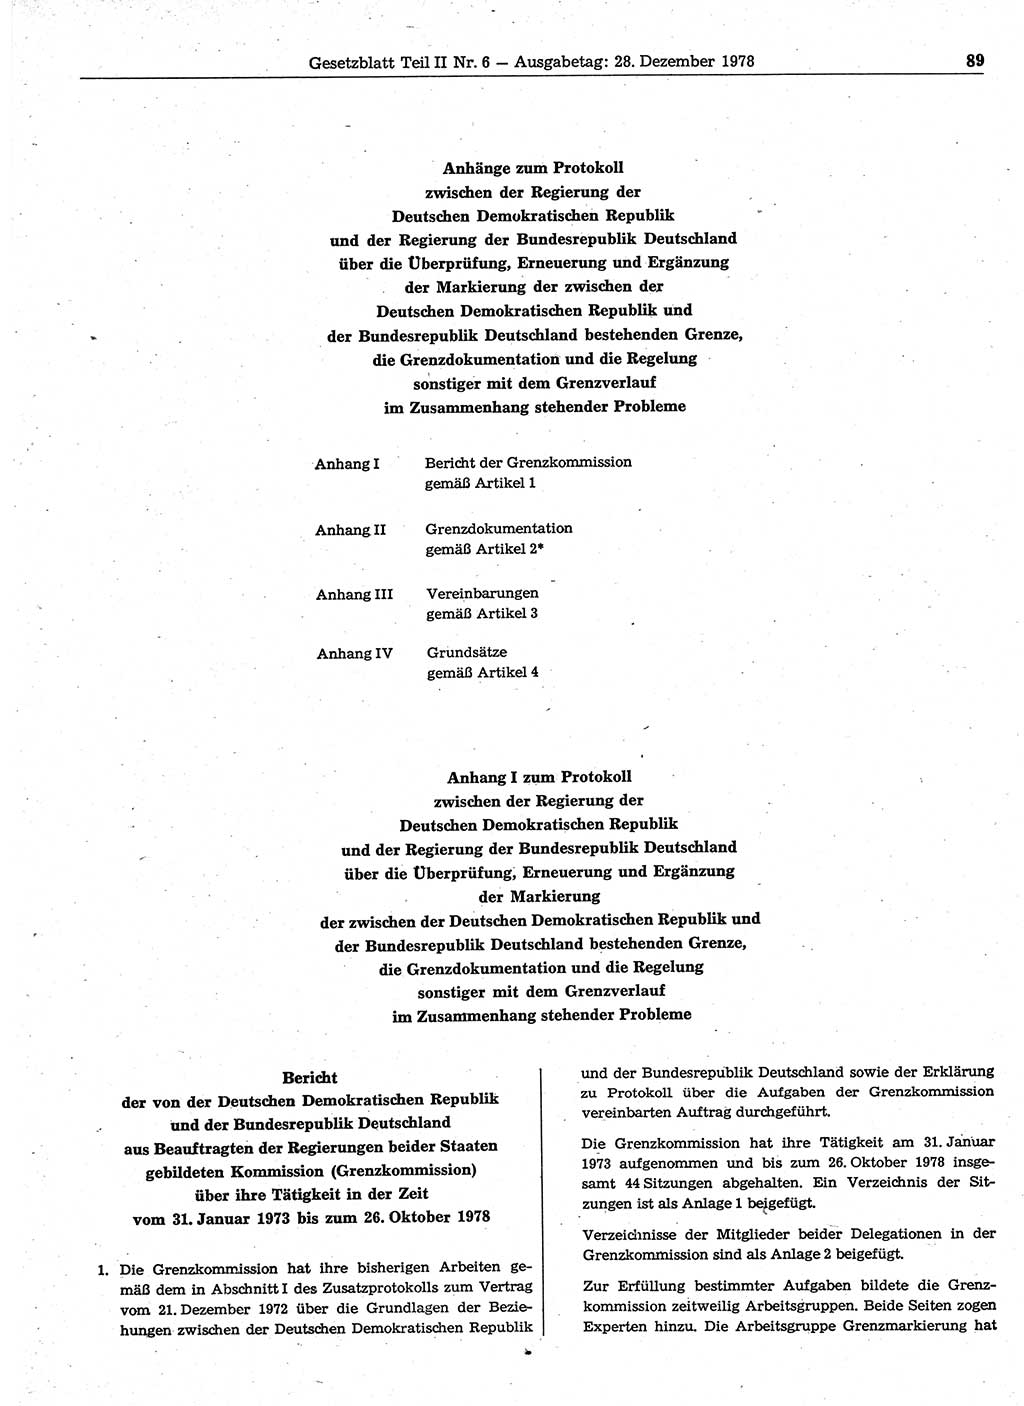 Gesetzblatt (GBl.) der Deutschen Demokratischen Republik (DDR) Teil ⅠⅠ 1978, Seite 89 (GBl. DDR ⅠⅠ 1978, S. 89)